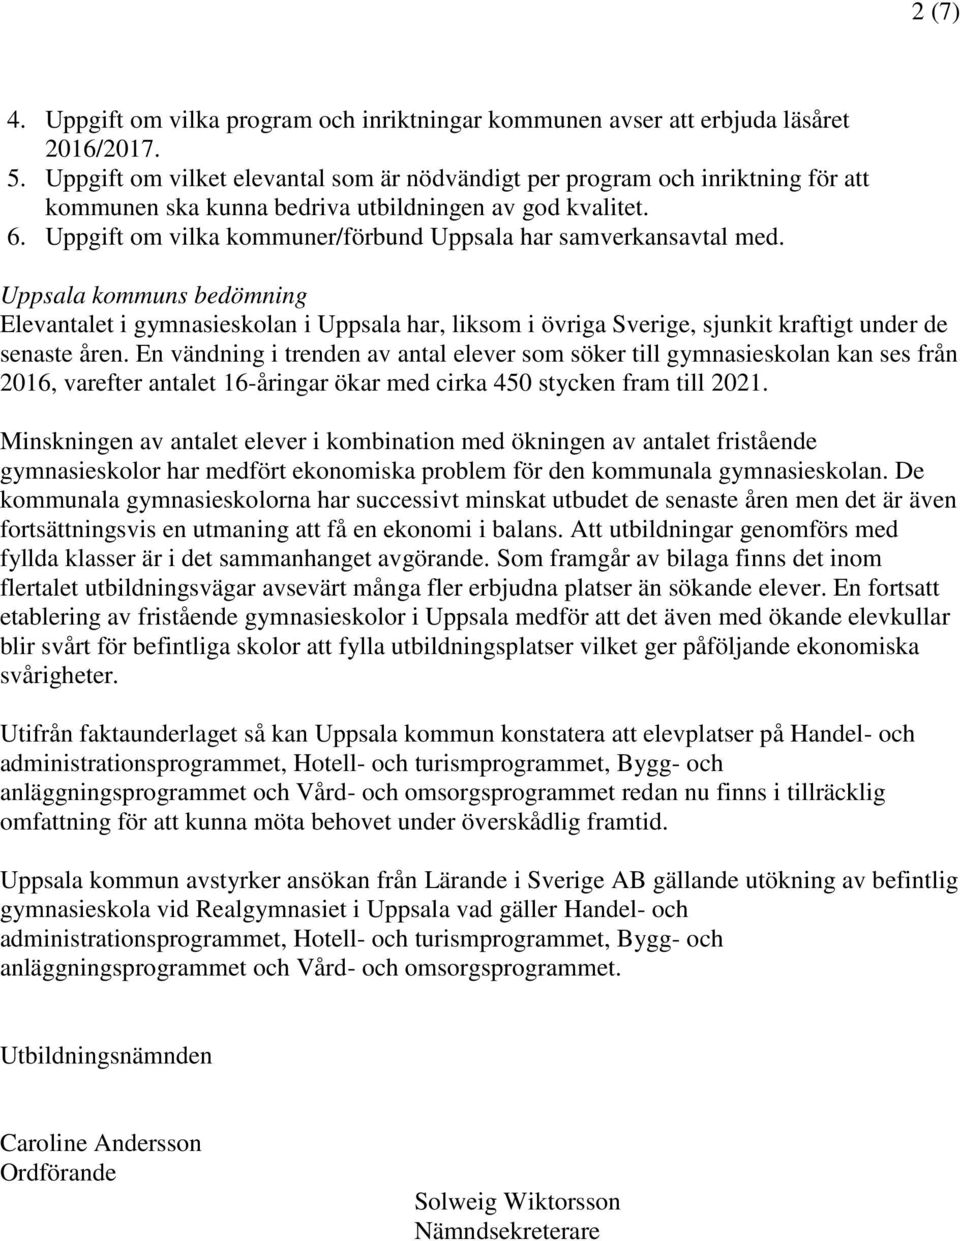 Uppgift om vilka kommuner/förbund Uppsala har samverkansavtal med.